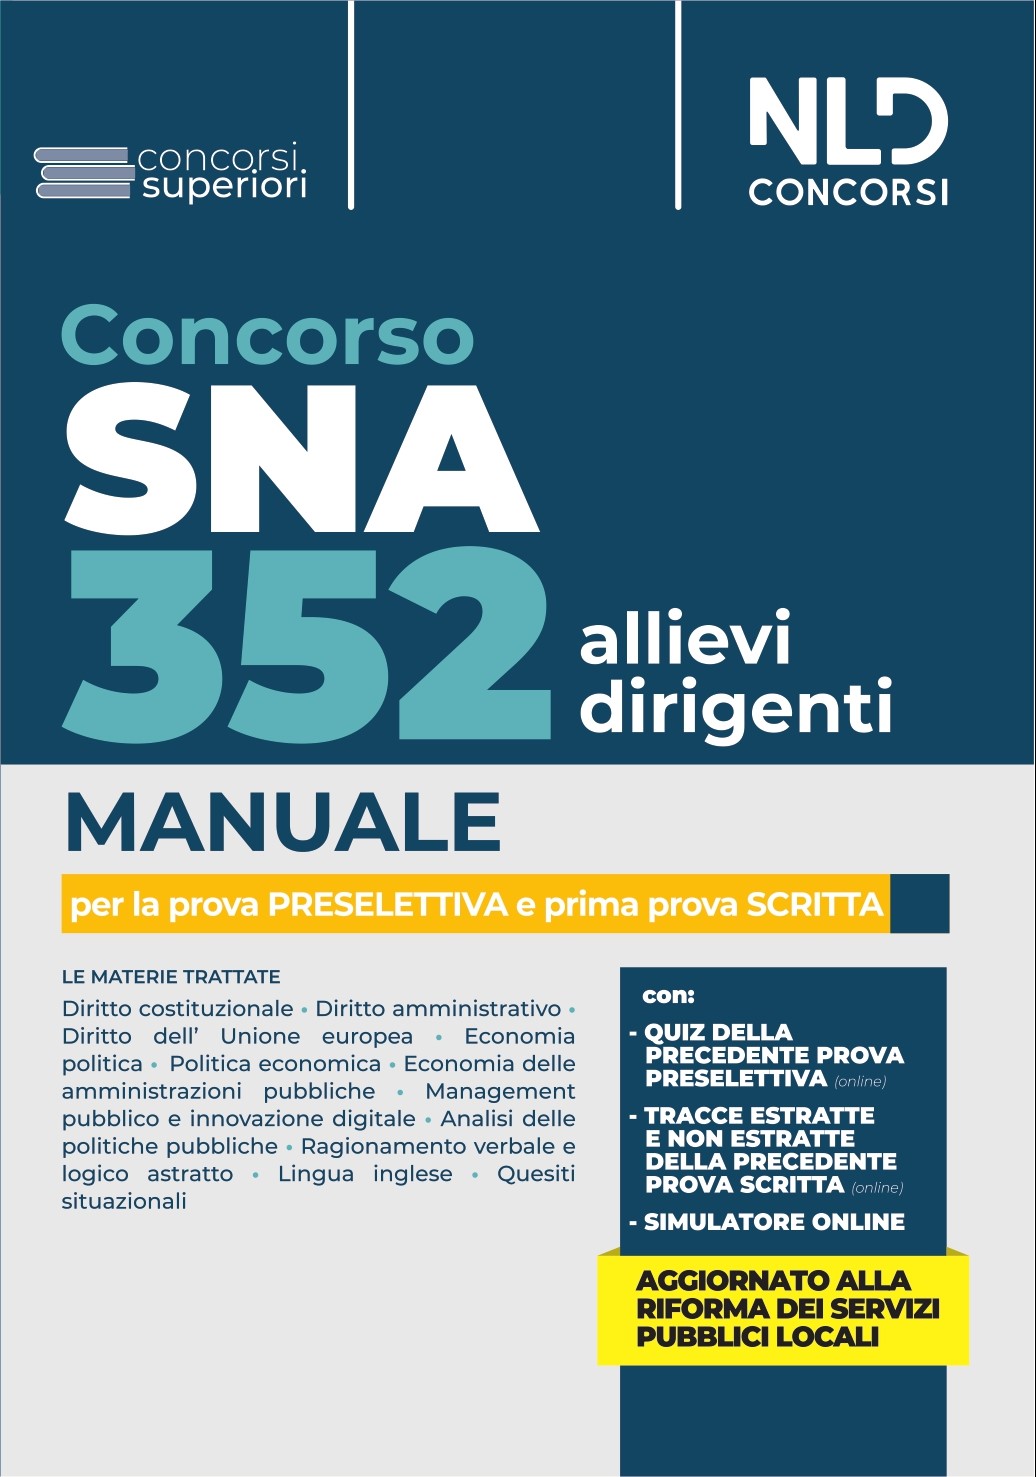 Concorso 352 Allievi Dirigenti SNA: Manuale per la preparazione alla prova preselettiva 